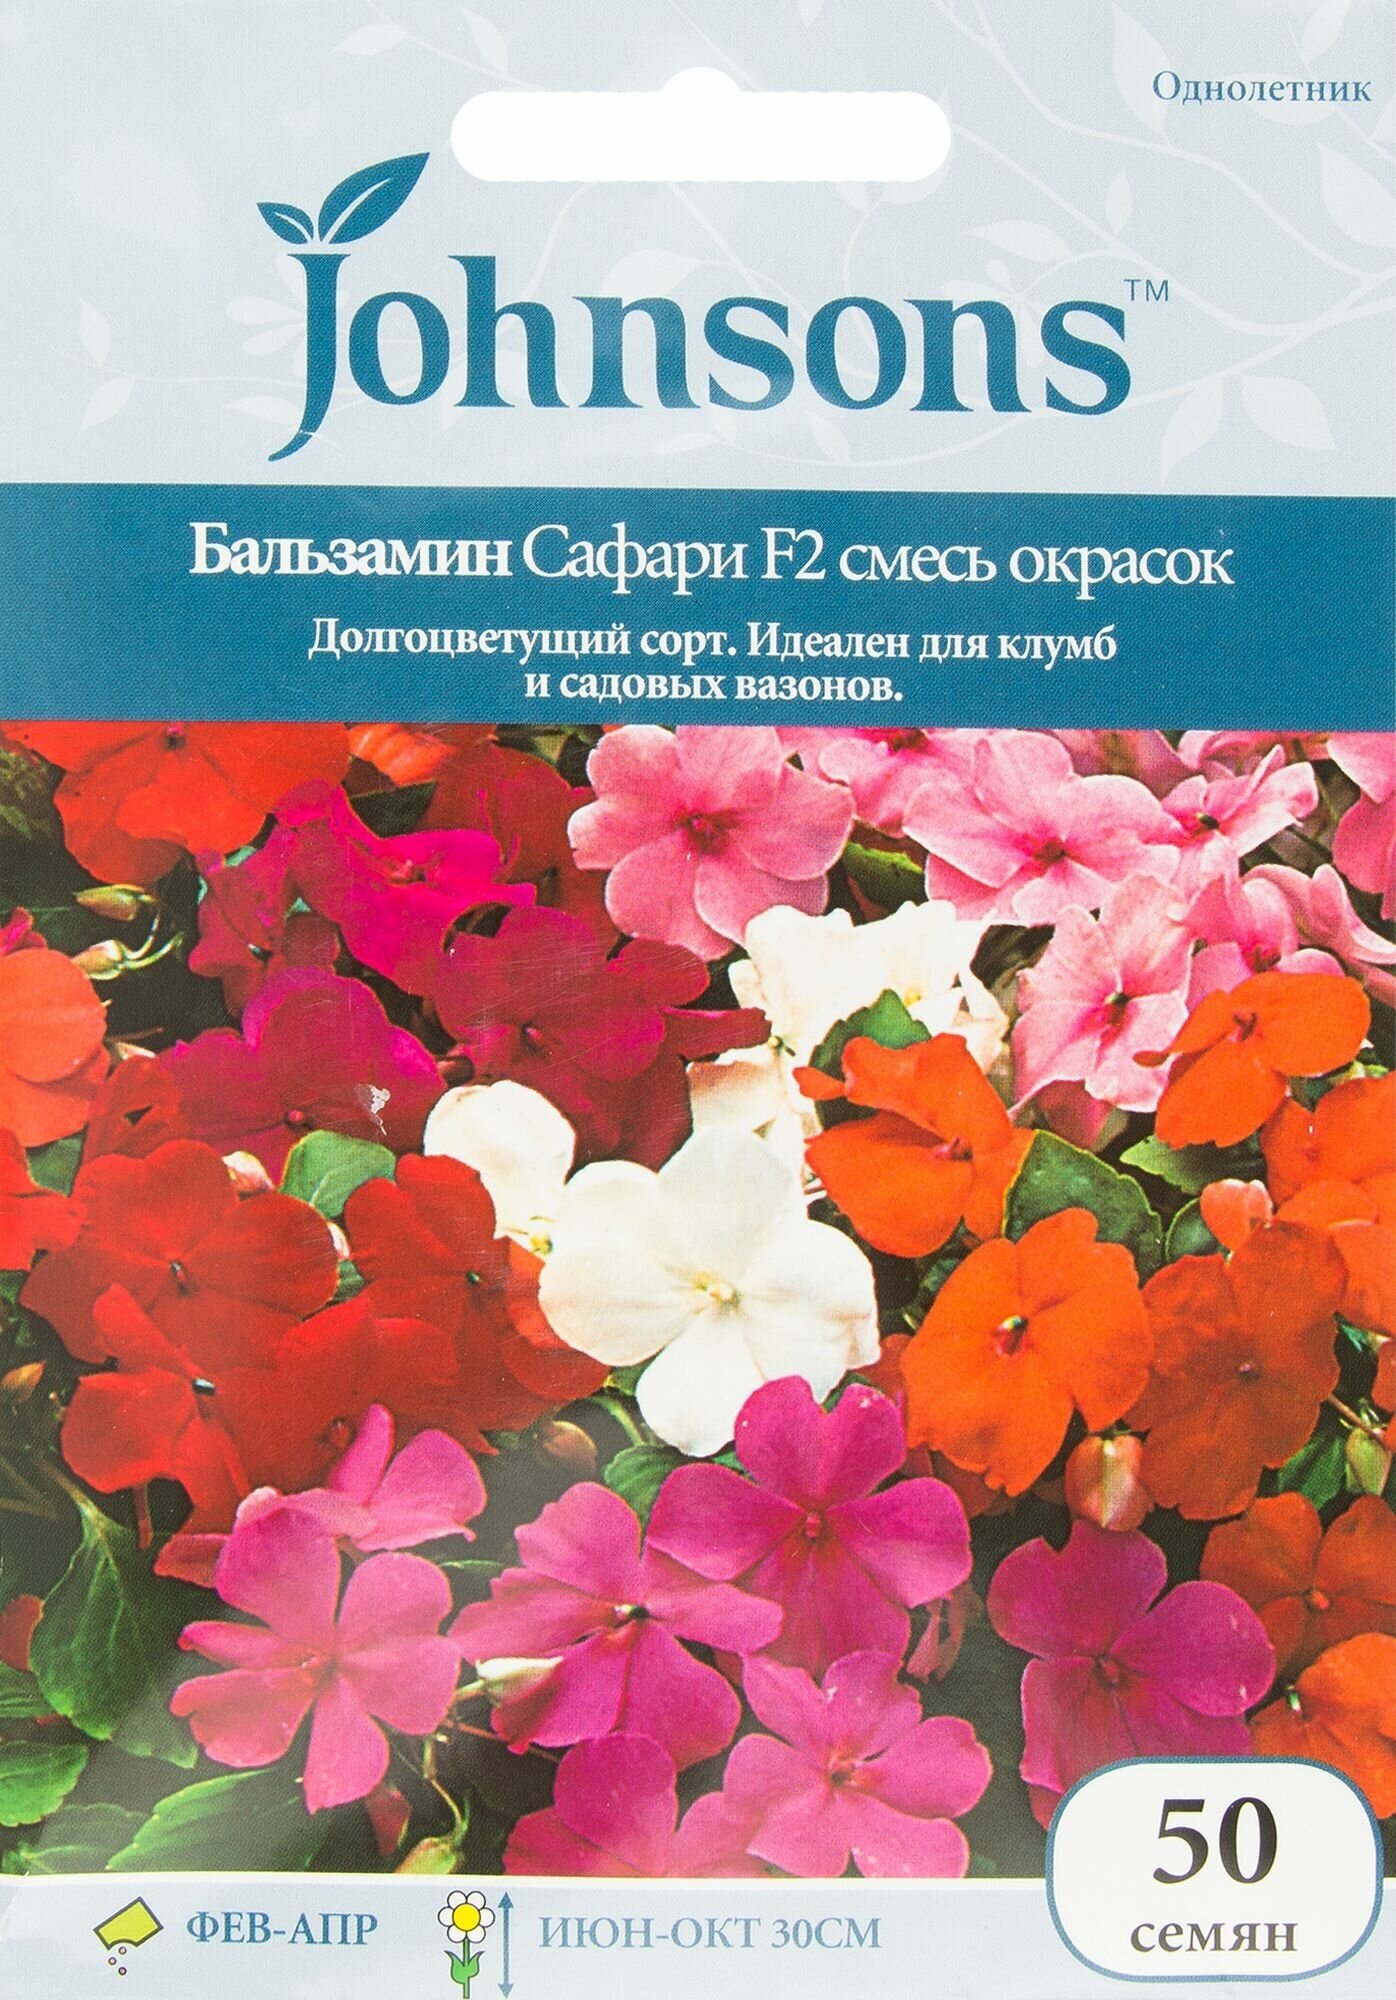 Семена цветов Бальзамин Сафари смесь окрасок Johnsons